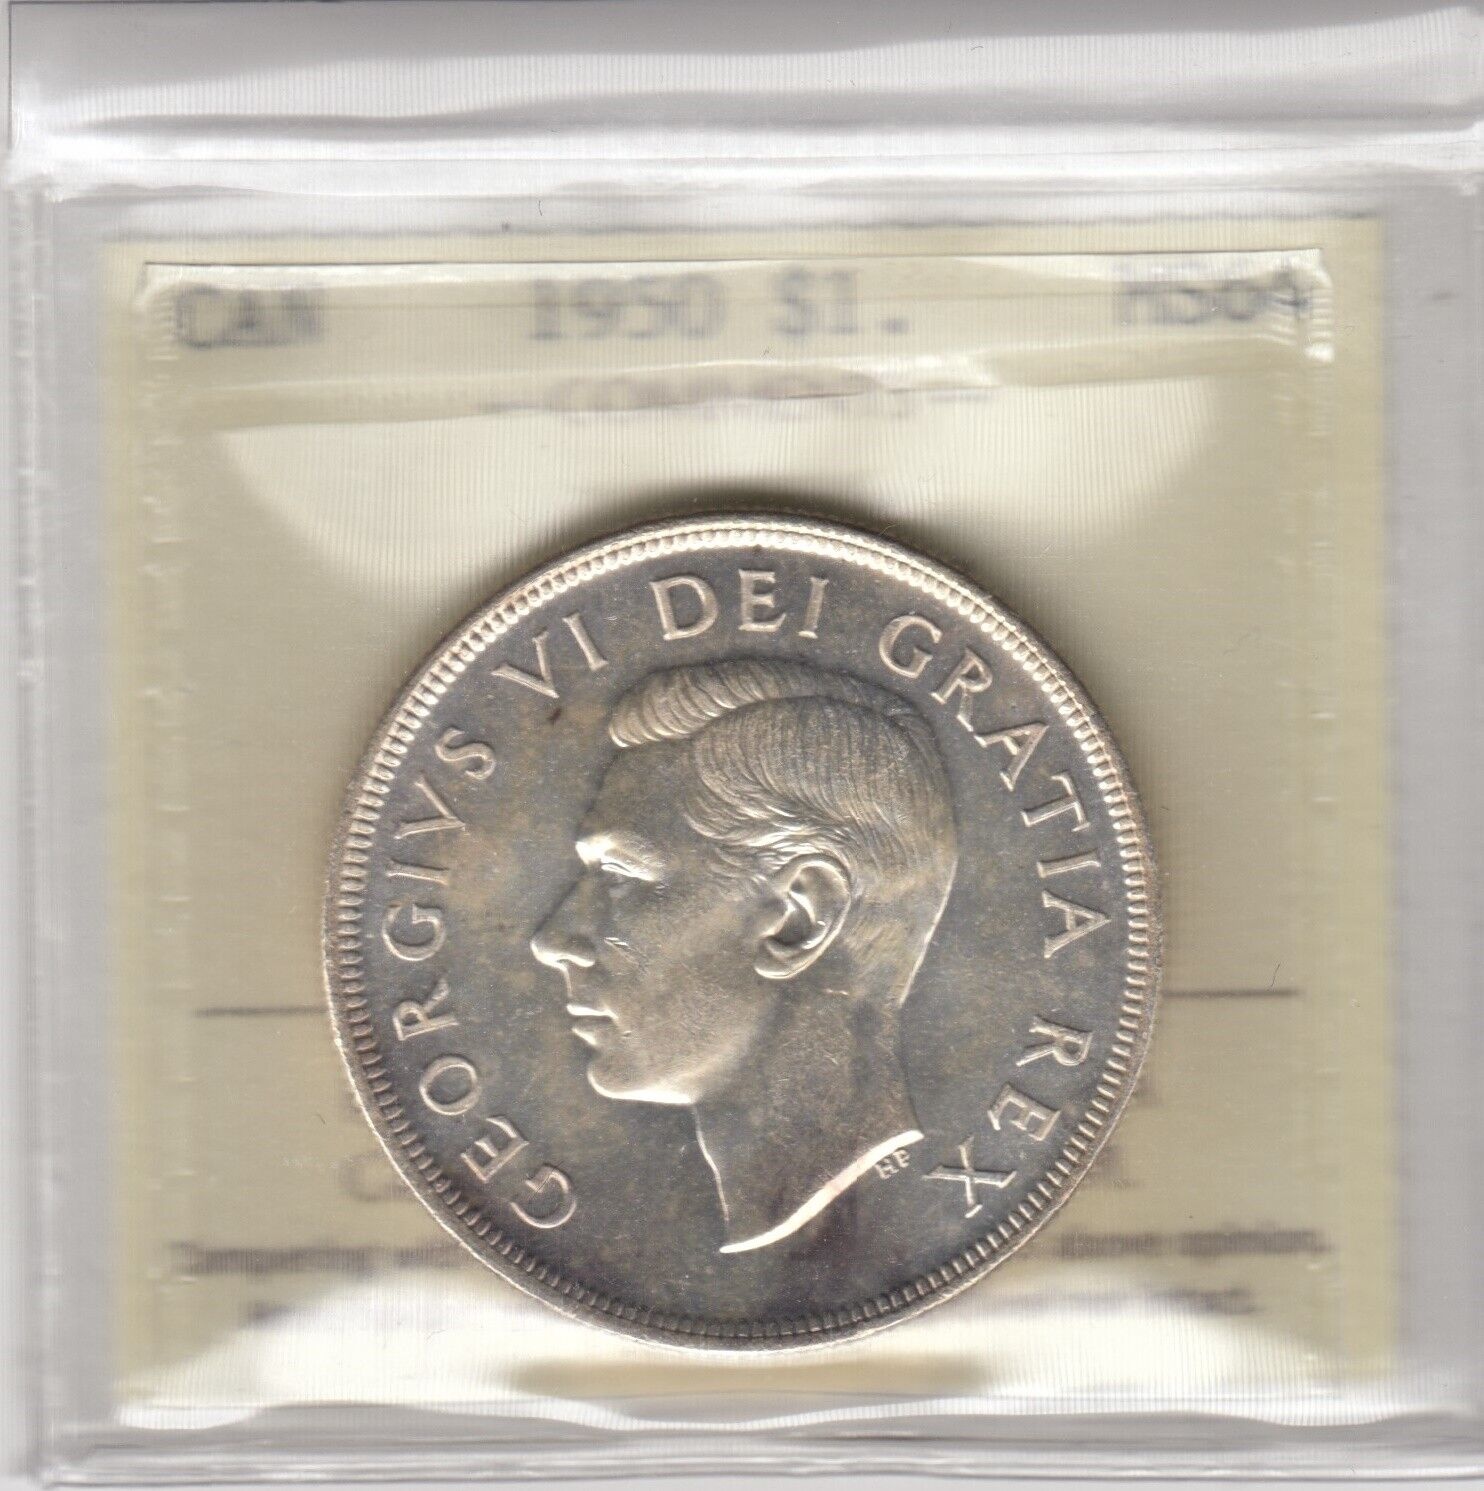  アンティークコイン コイン 金貨 銀貨  [送料無料] 1950 Canada One Silver Dollar - Arnprior - ICCS Graded MS-64